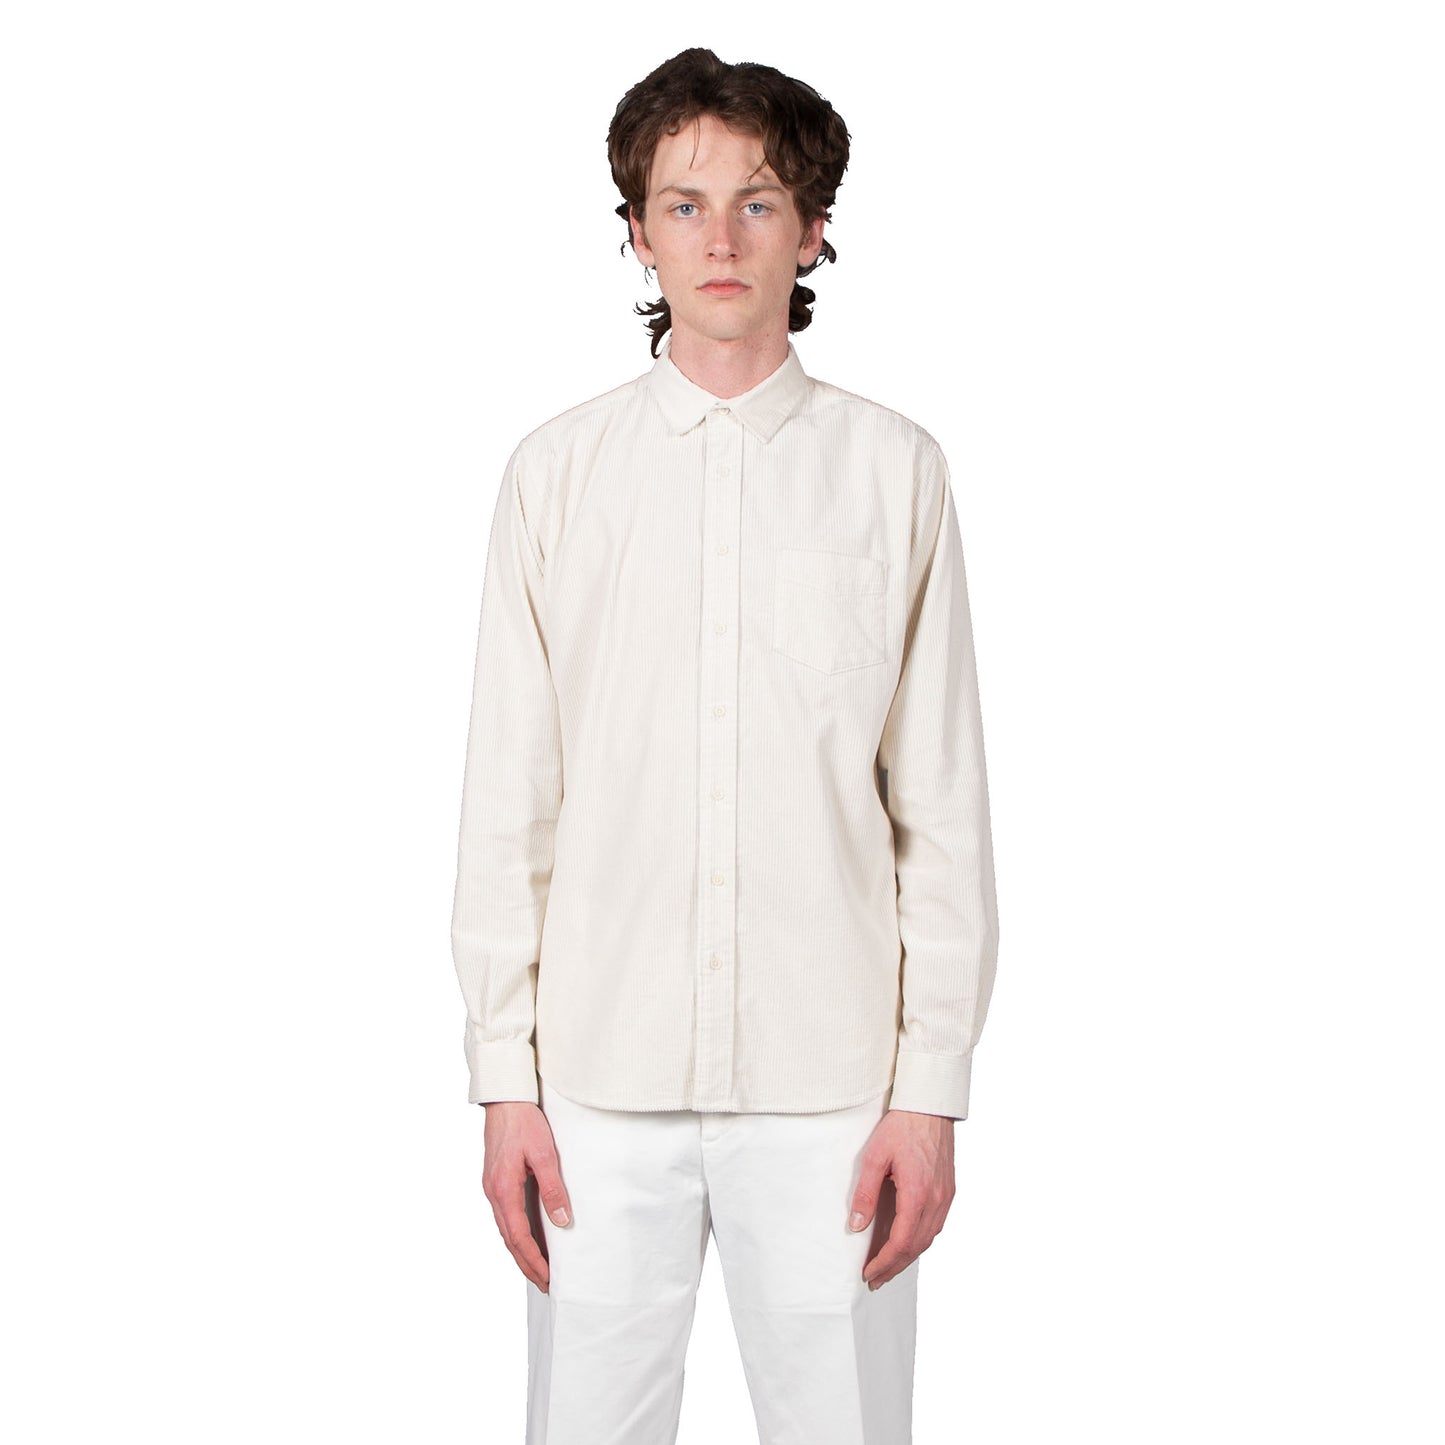 Shop Schnayderman's shirt online unbutton cord off white